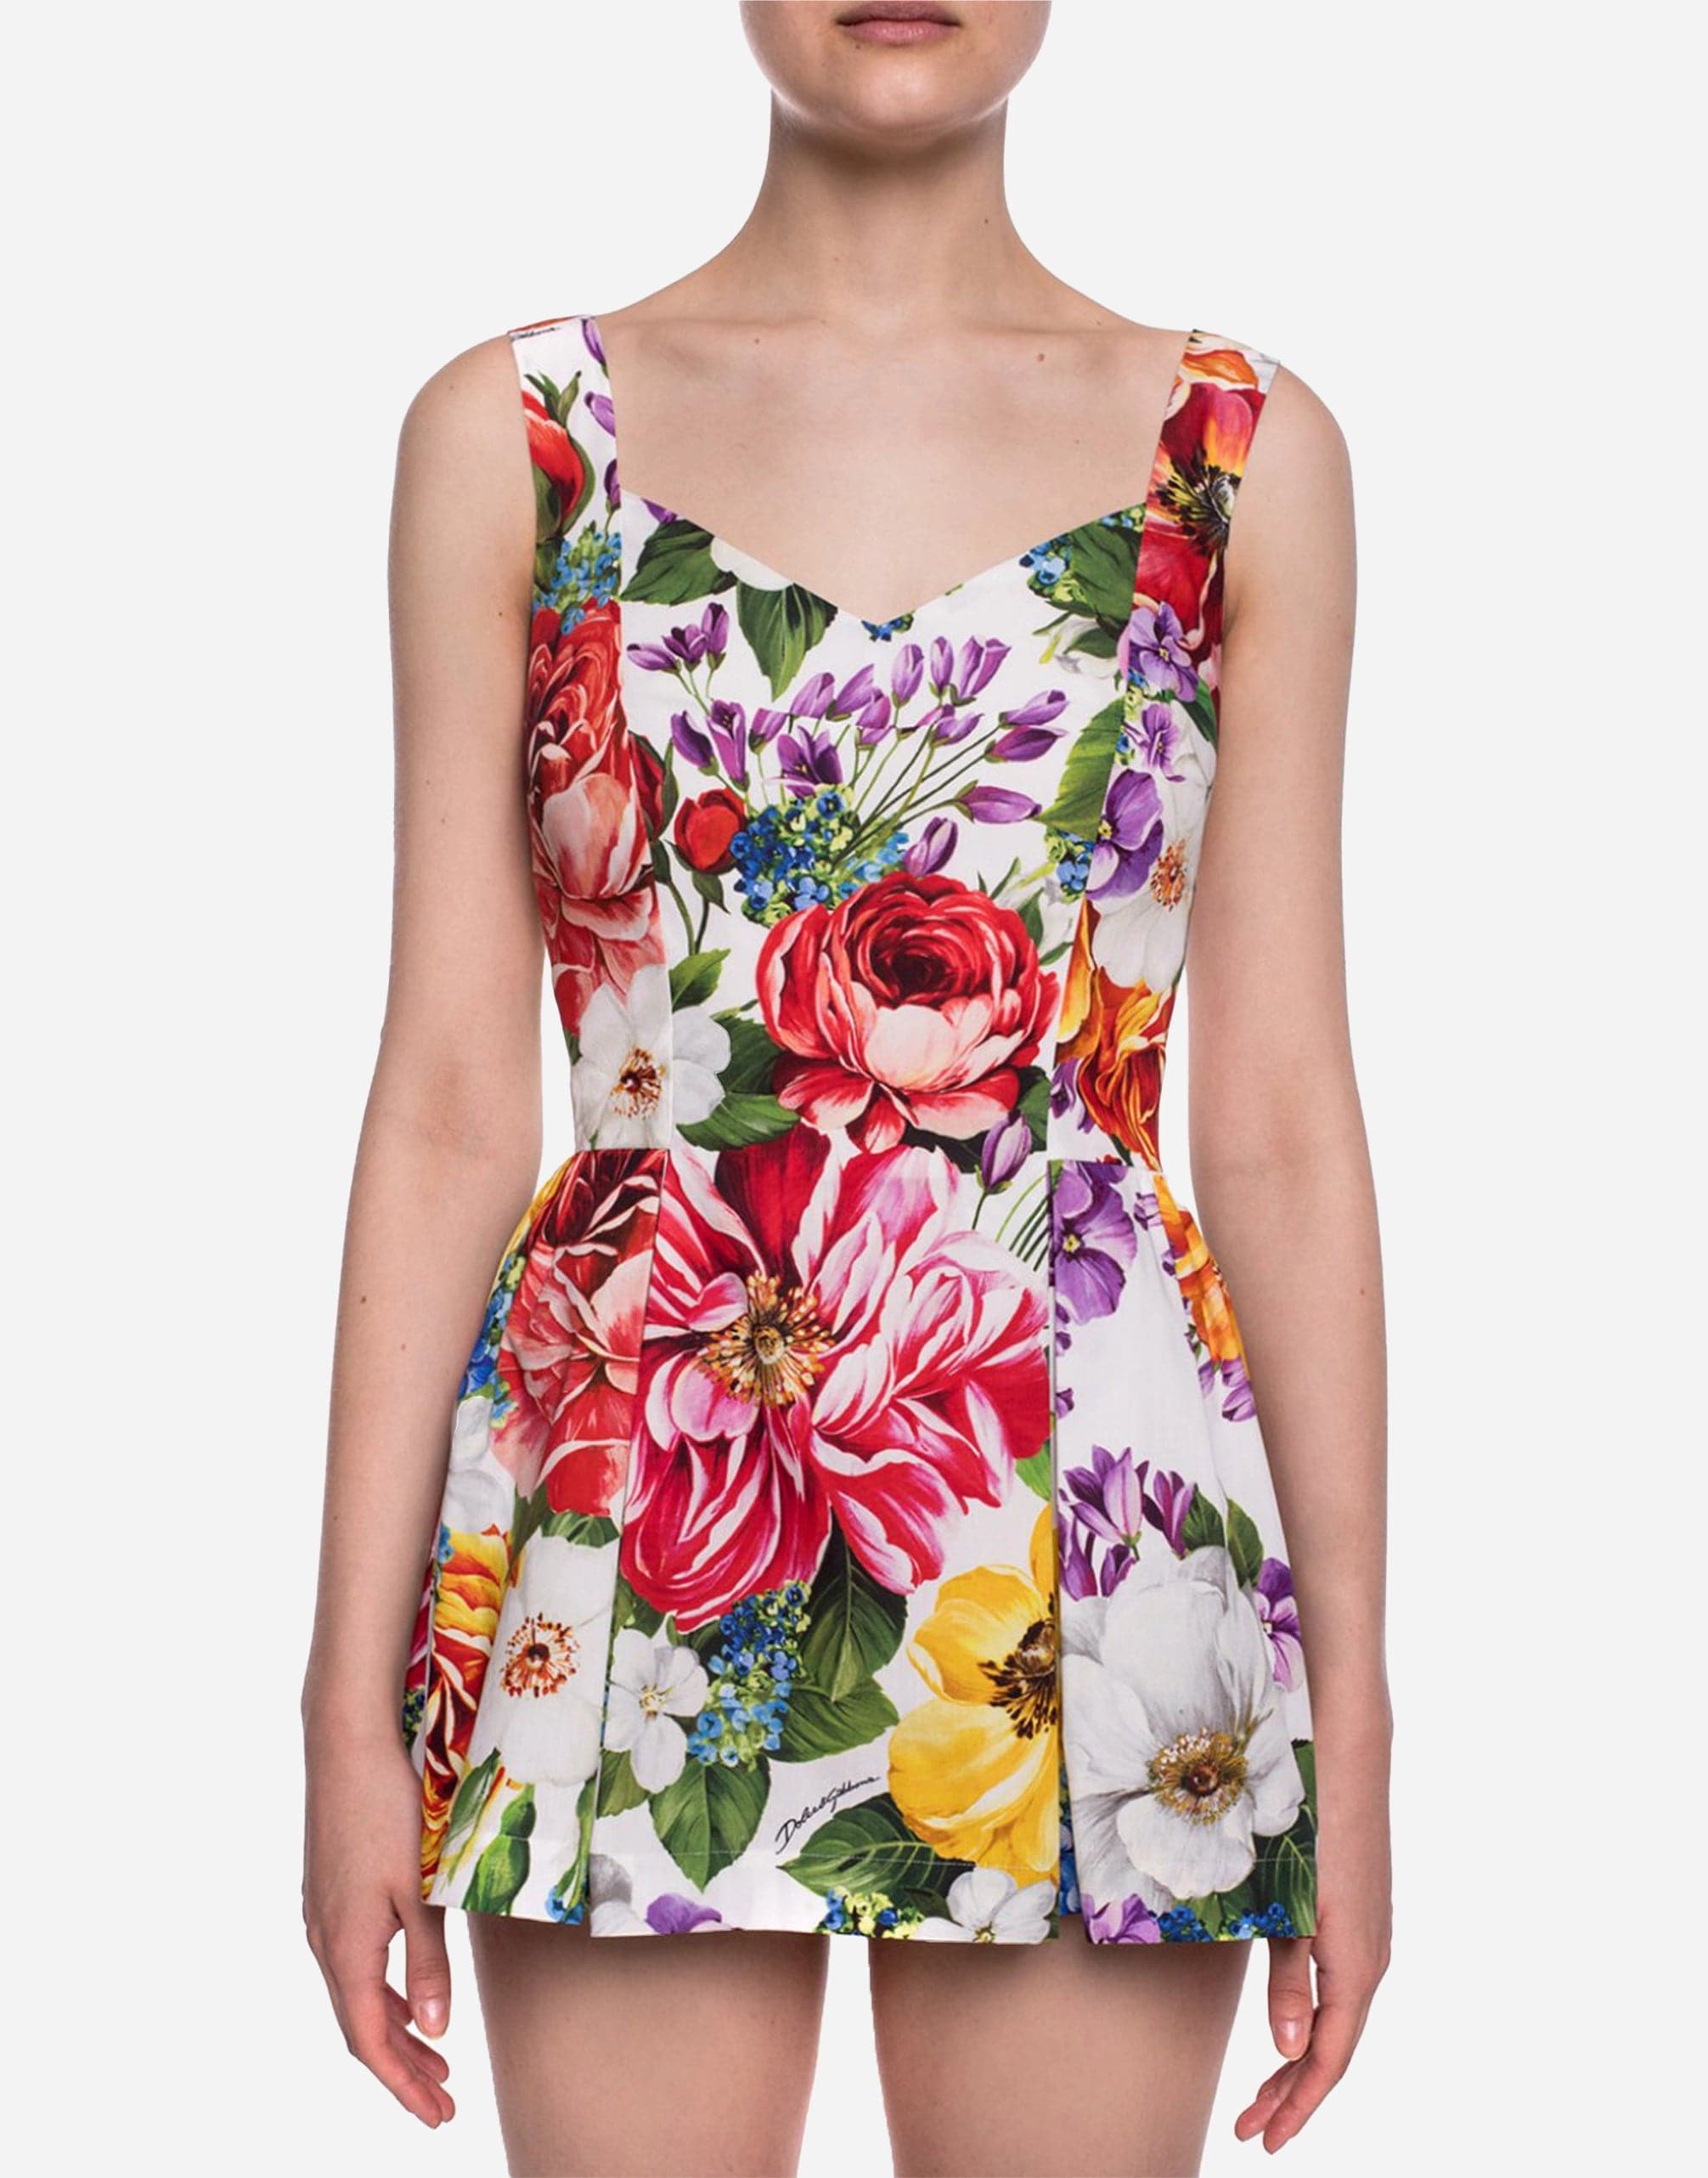 Dolce & Gabbana Multicolor Floral Print Cotton Body Suit Top